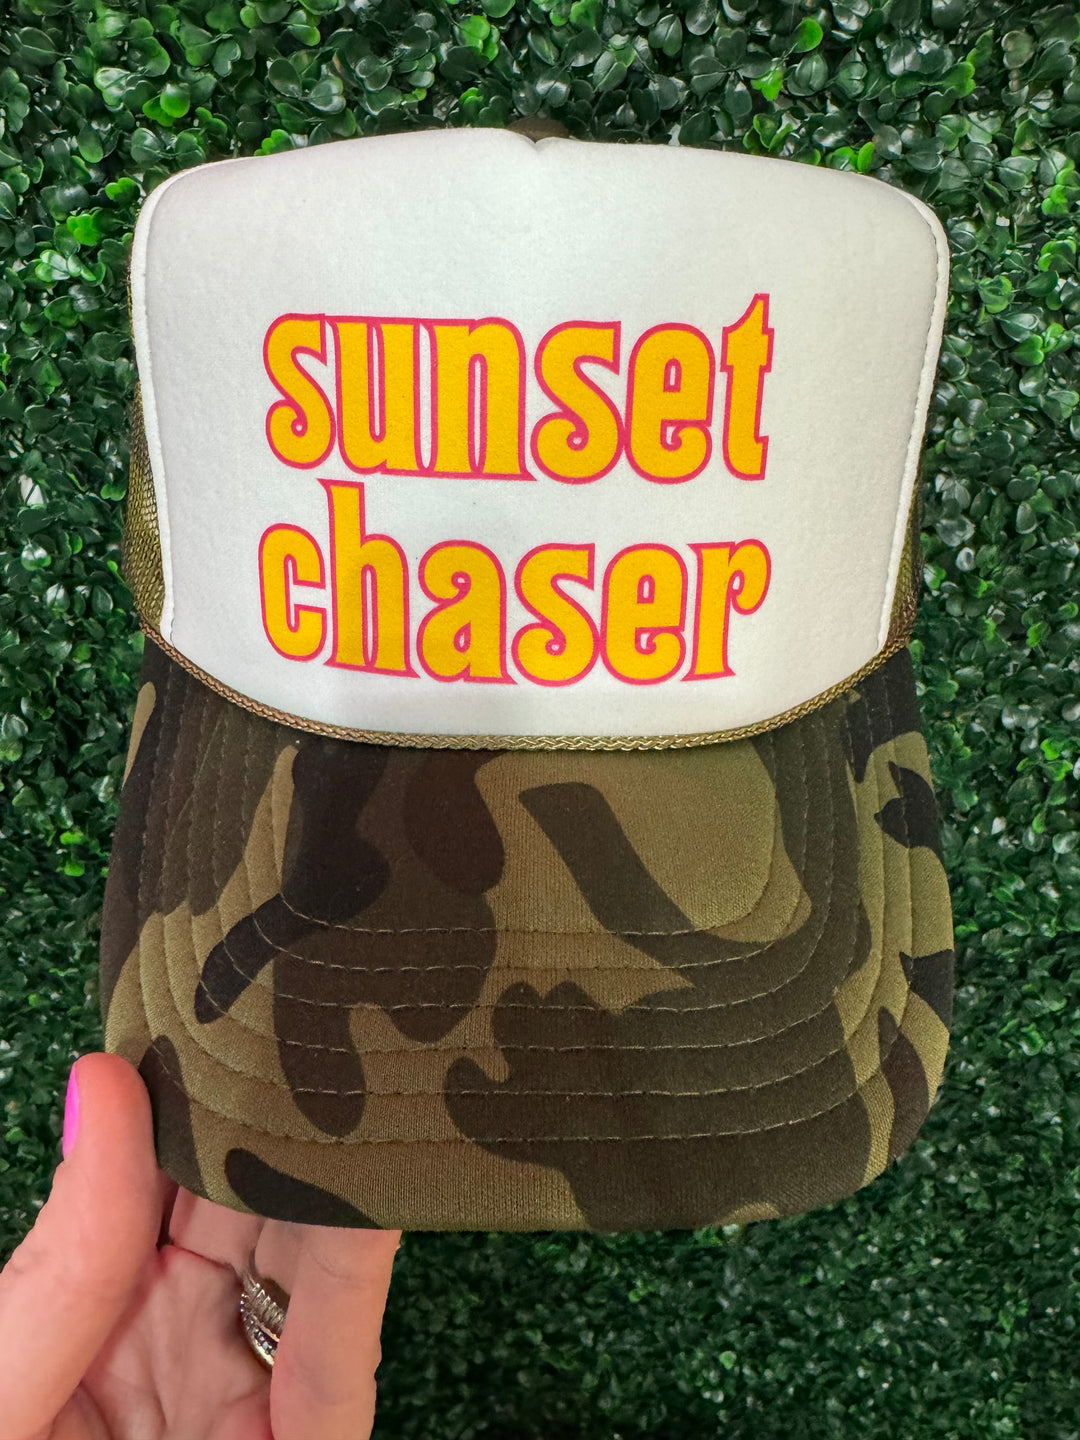 Sunset Chaser Trucker Hat